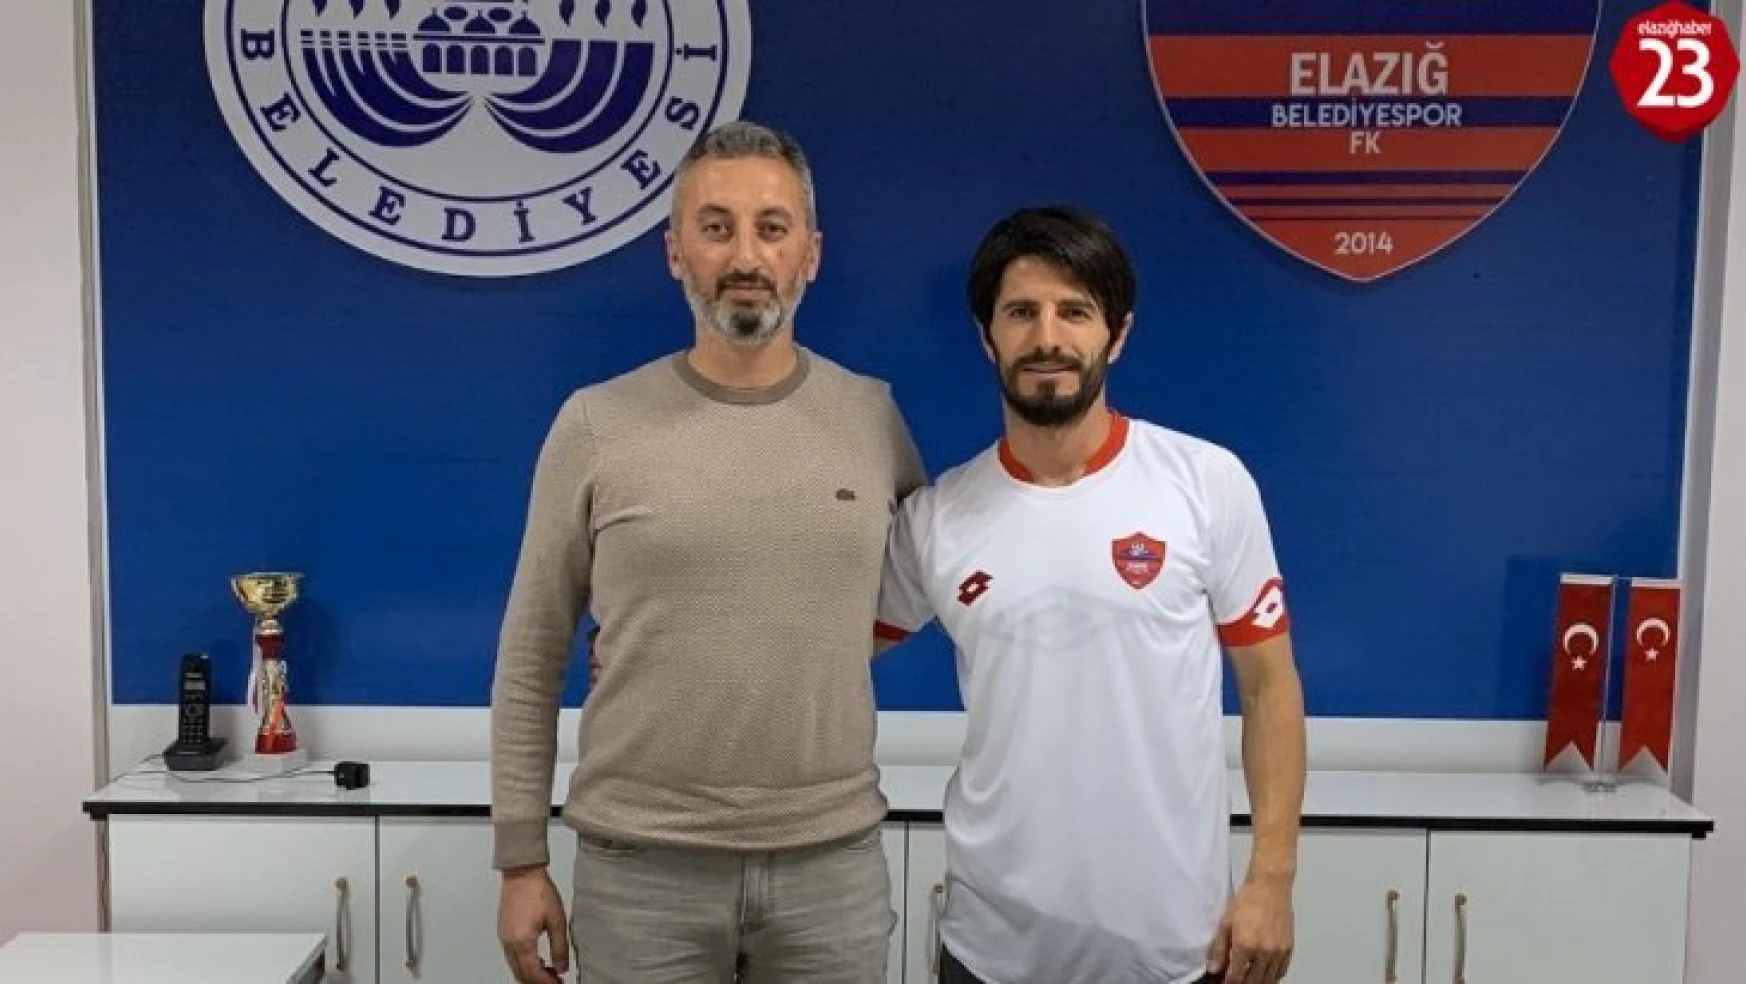 Elazığ Belediyespor, Emrah Çalışlar ile 1,5 yıllık sözleşme imzaladı